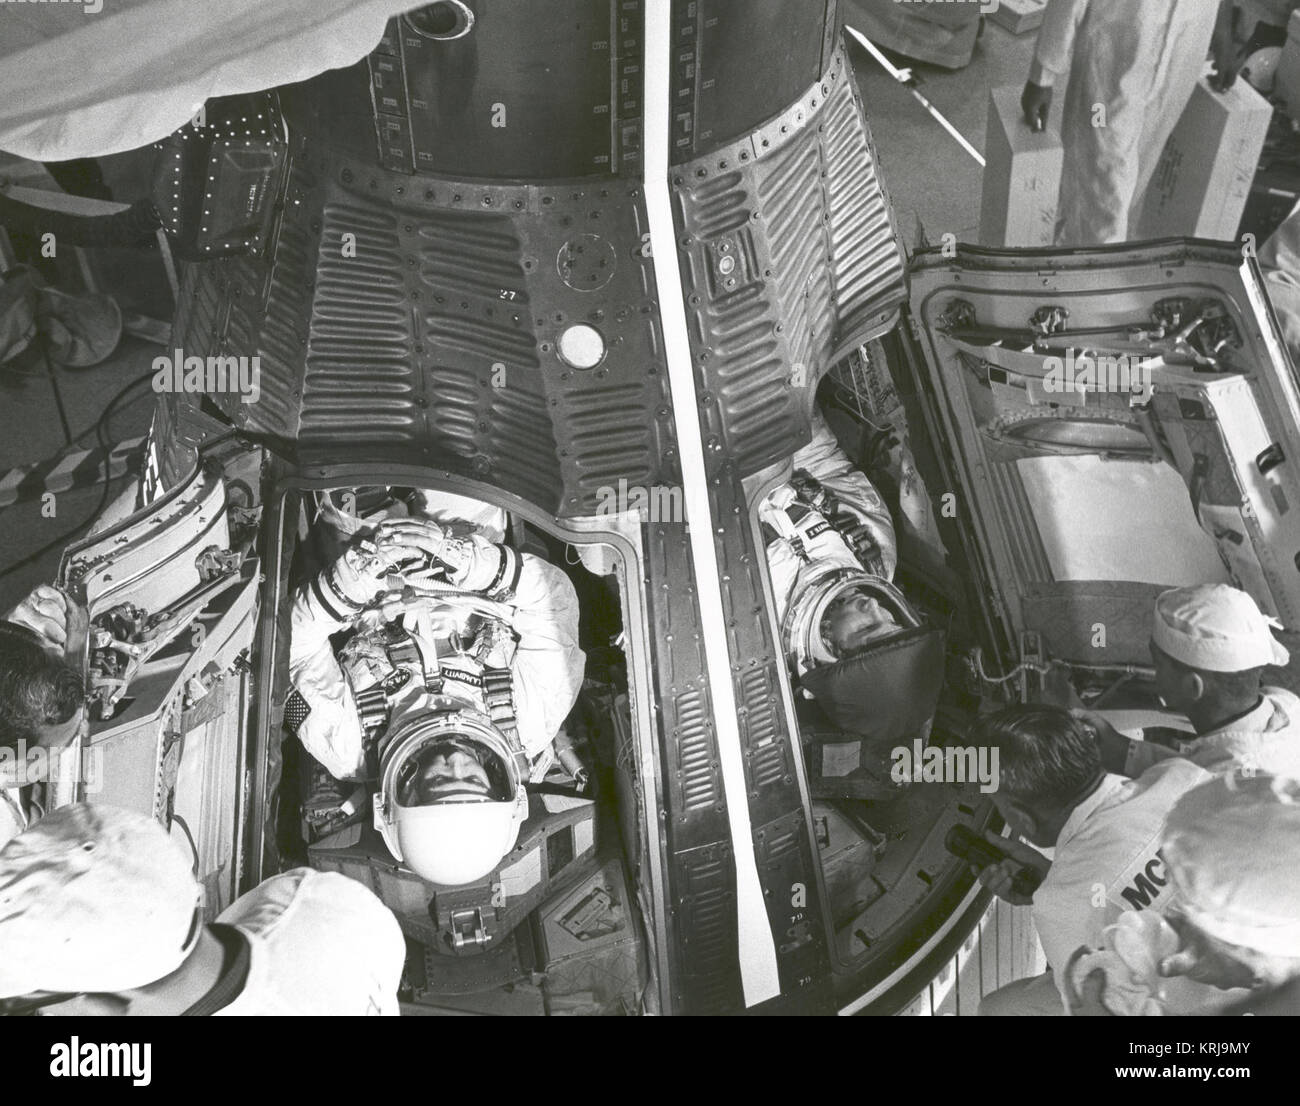 Gli astronauti James McDivitt A., il comando pilota (sinistra) e Edward H. White II, pilota, sono mostrati alcuni minuti dopo l'inserimento nella NASA Gemini IV veicolo spaziale di circa 7:15 AM EST la mattina del 3 giugno, 1965, al Launch Complex 19. Dopo 1 ora e 16 minuti di ritardo, a causa della difficoltà di abbassare il veicolo di lancio erettore, il veicolo spaziale è stato lanciato a 10:16 AM EST. Un coperchio sopra bianco oro della visiera aiuta a prevenire eventuali graffi prima del portello di chiusura. La visiera in oro bianco protetto dai raggi del sole durante il suo EVA, la prima mai eseguiti dagli astronauti americani. Gemini IV astronauti attendono Foto Stock